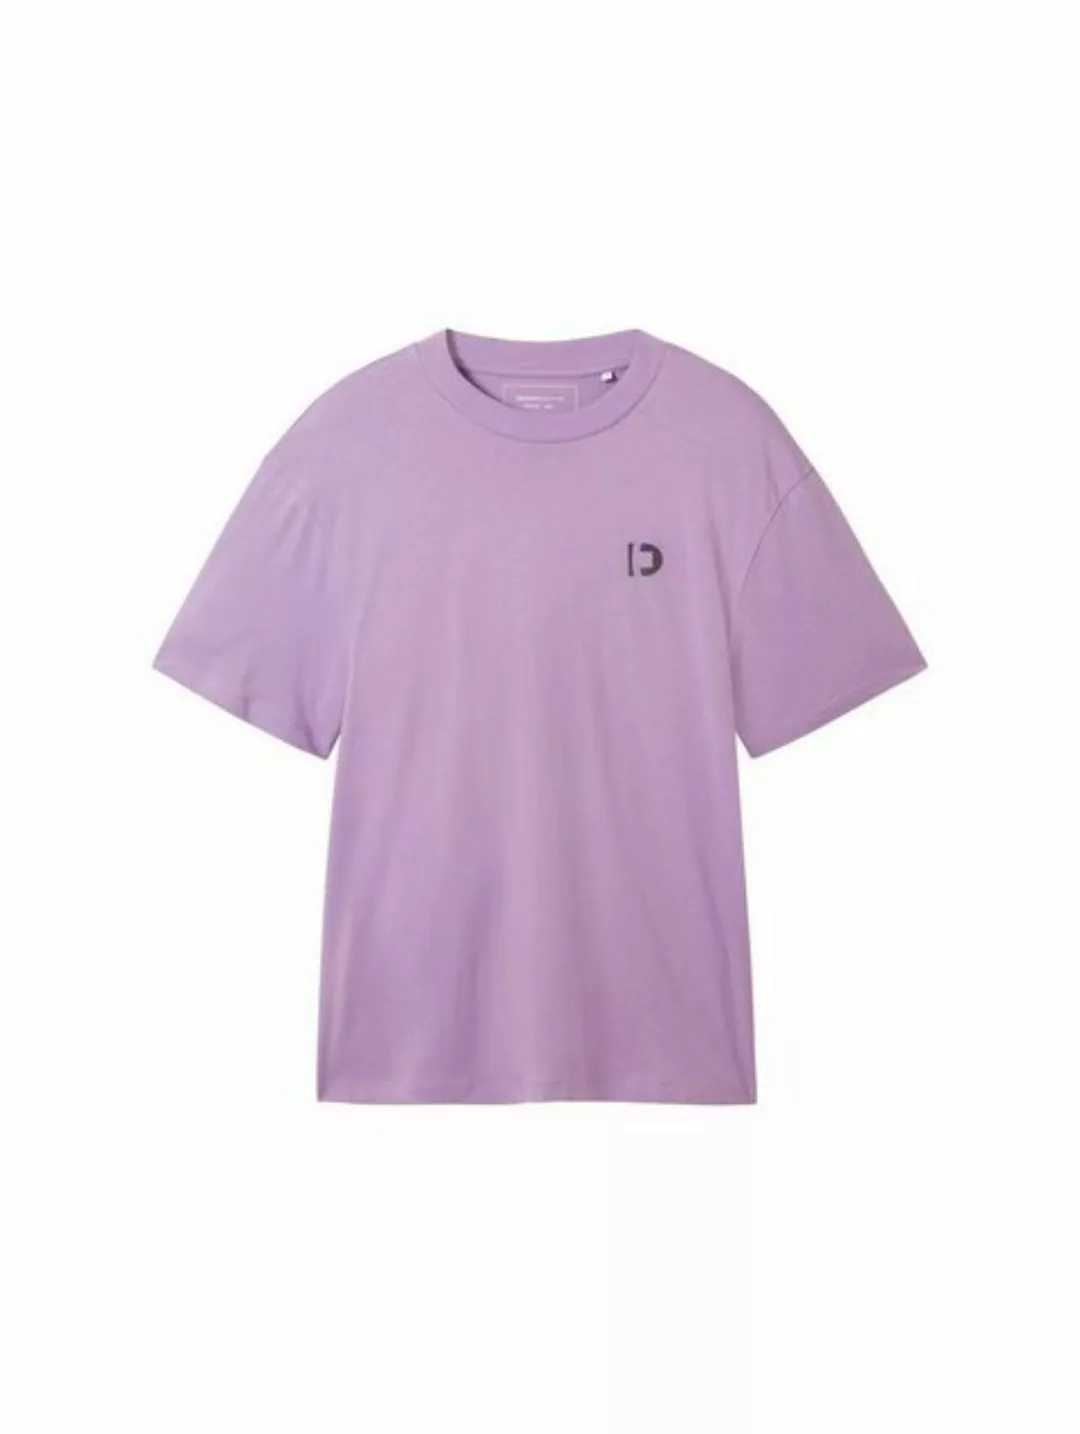 TOM TAILOR Denim T-Shirt Relaxed T-Shirt mit Print günstig online kaufen